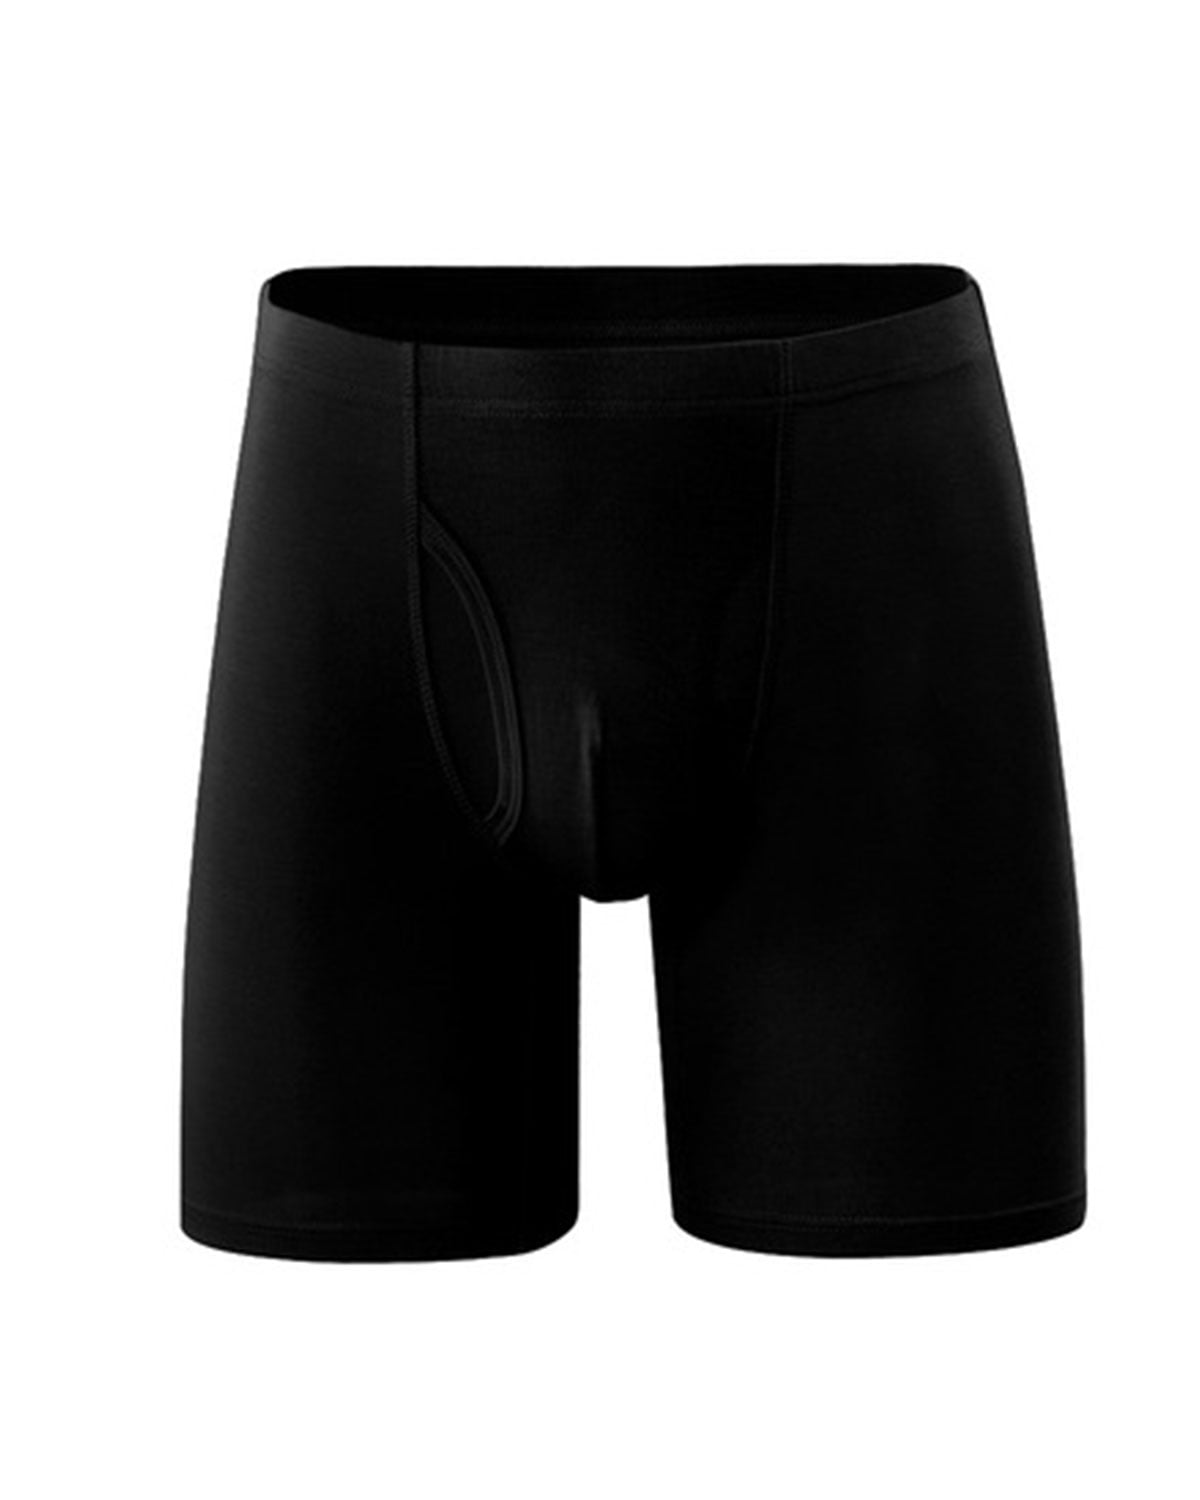 Men's Boxer Briefs Cotton High Waist Loose Underwear Shorts Underpants L-8XL